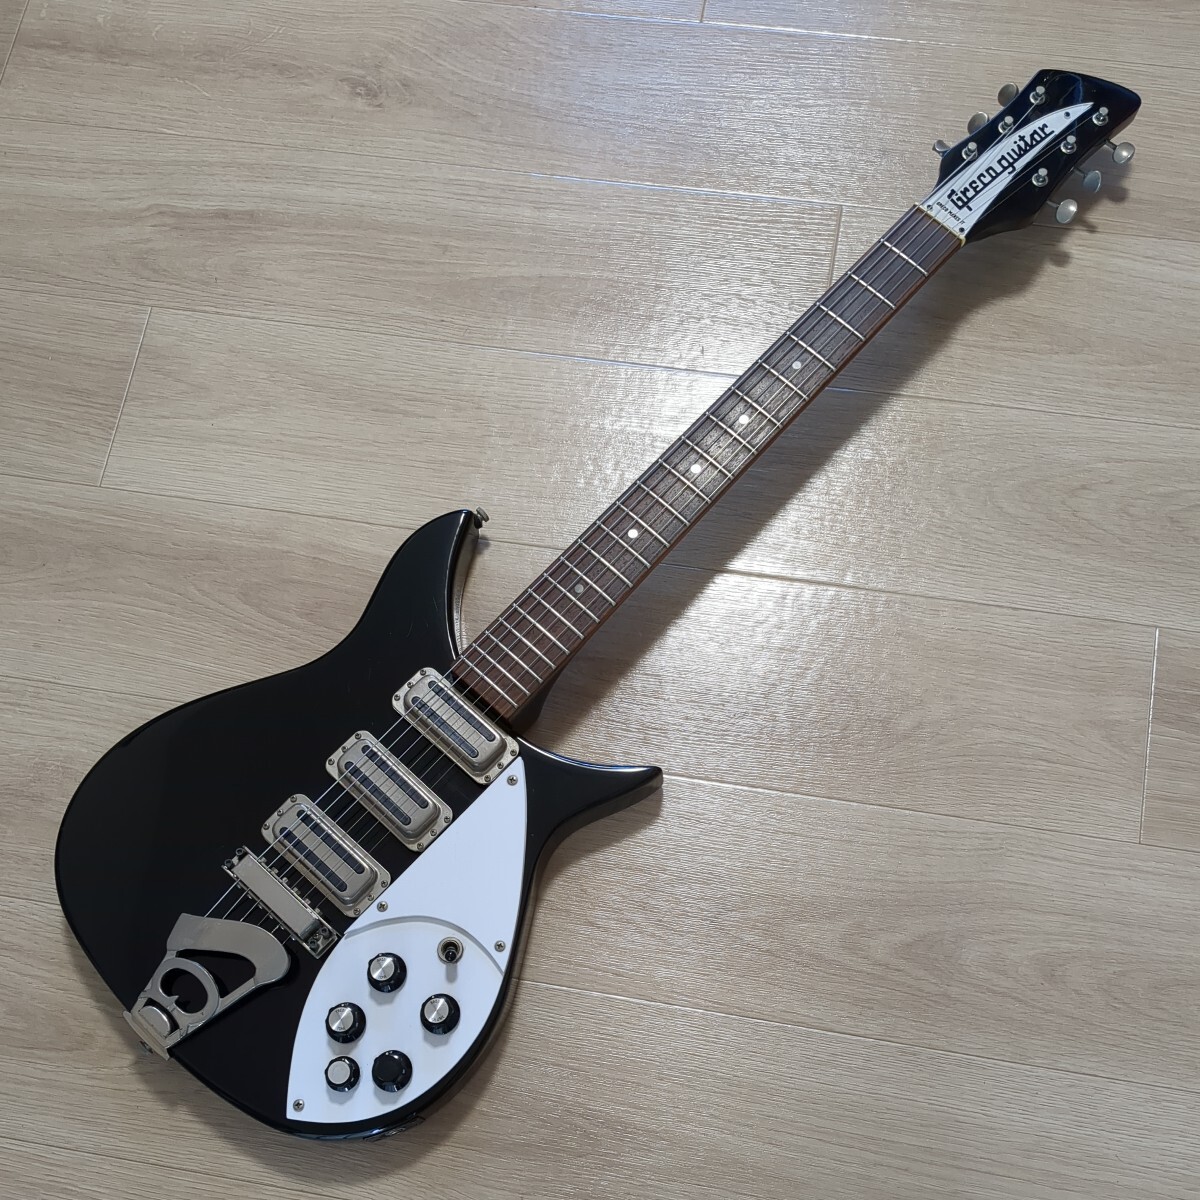 現状品 Greco グレコ リッケンバッカー タイプ JLG-80 ソフトケース付き 黒 エレキギターの画像1